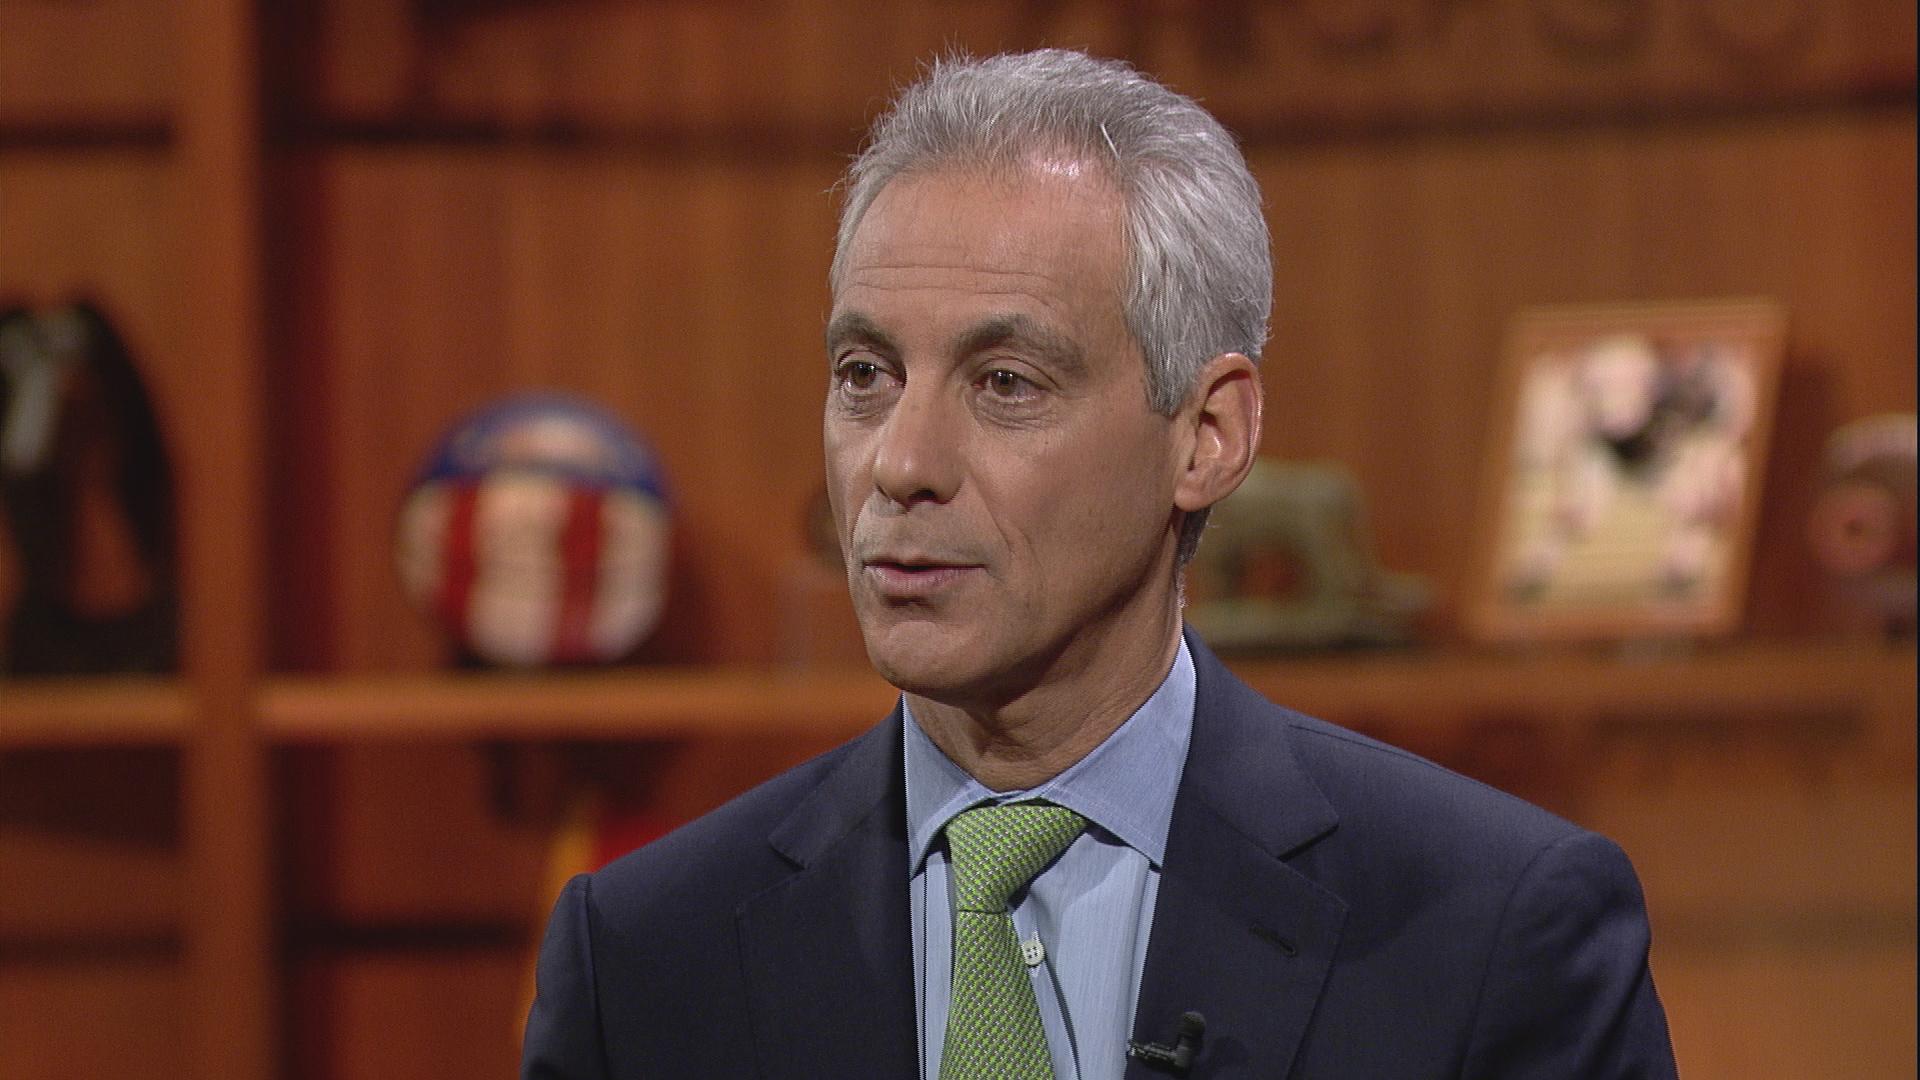 Mayor Rahm Emanuel appears on “Chicago Tonight” on Jan. 24.